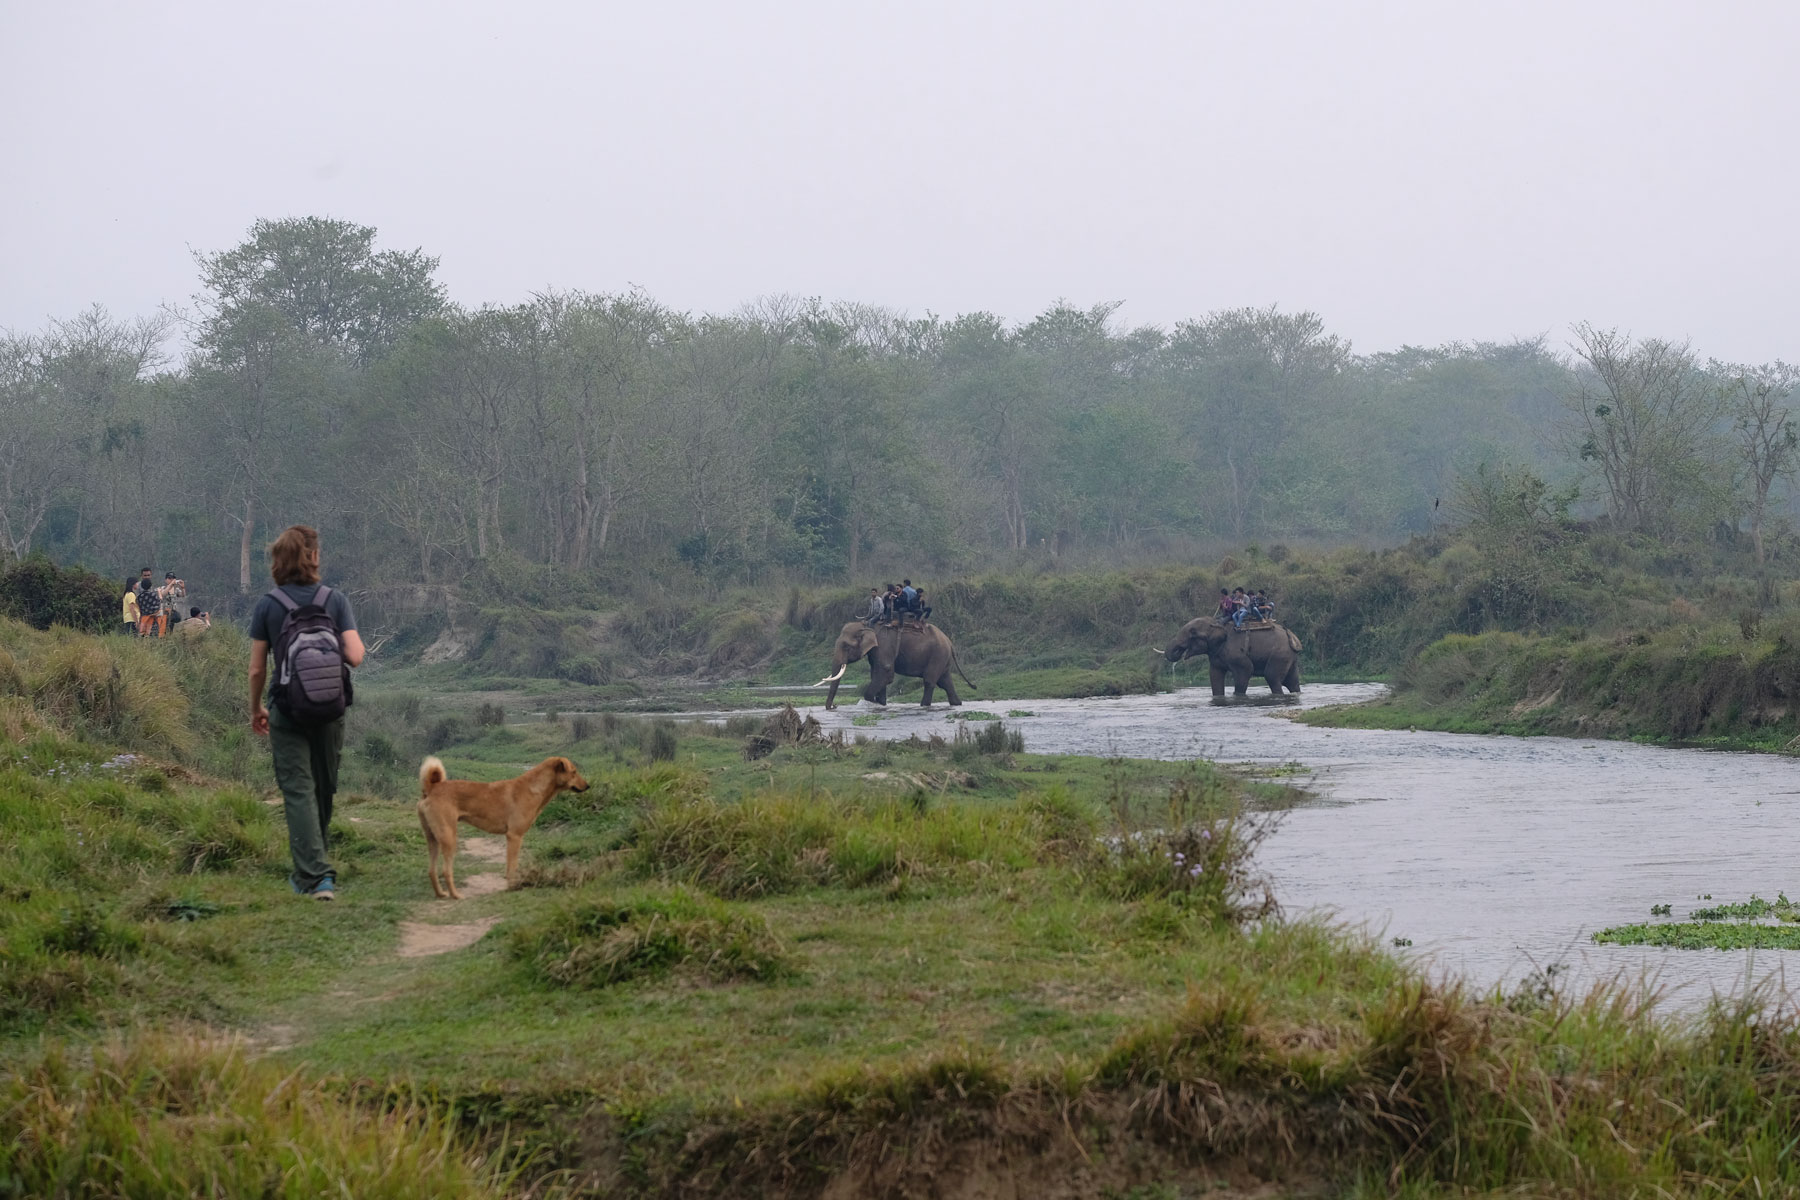 Sebastian geht neben einem Hund und schaut zu zwei berittenen Elefanten, die im Fluss waten.